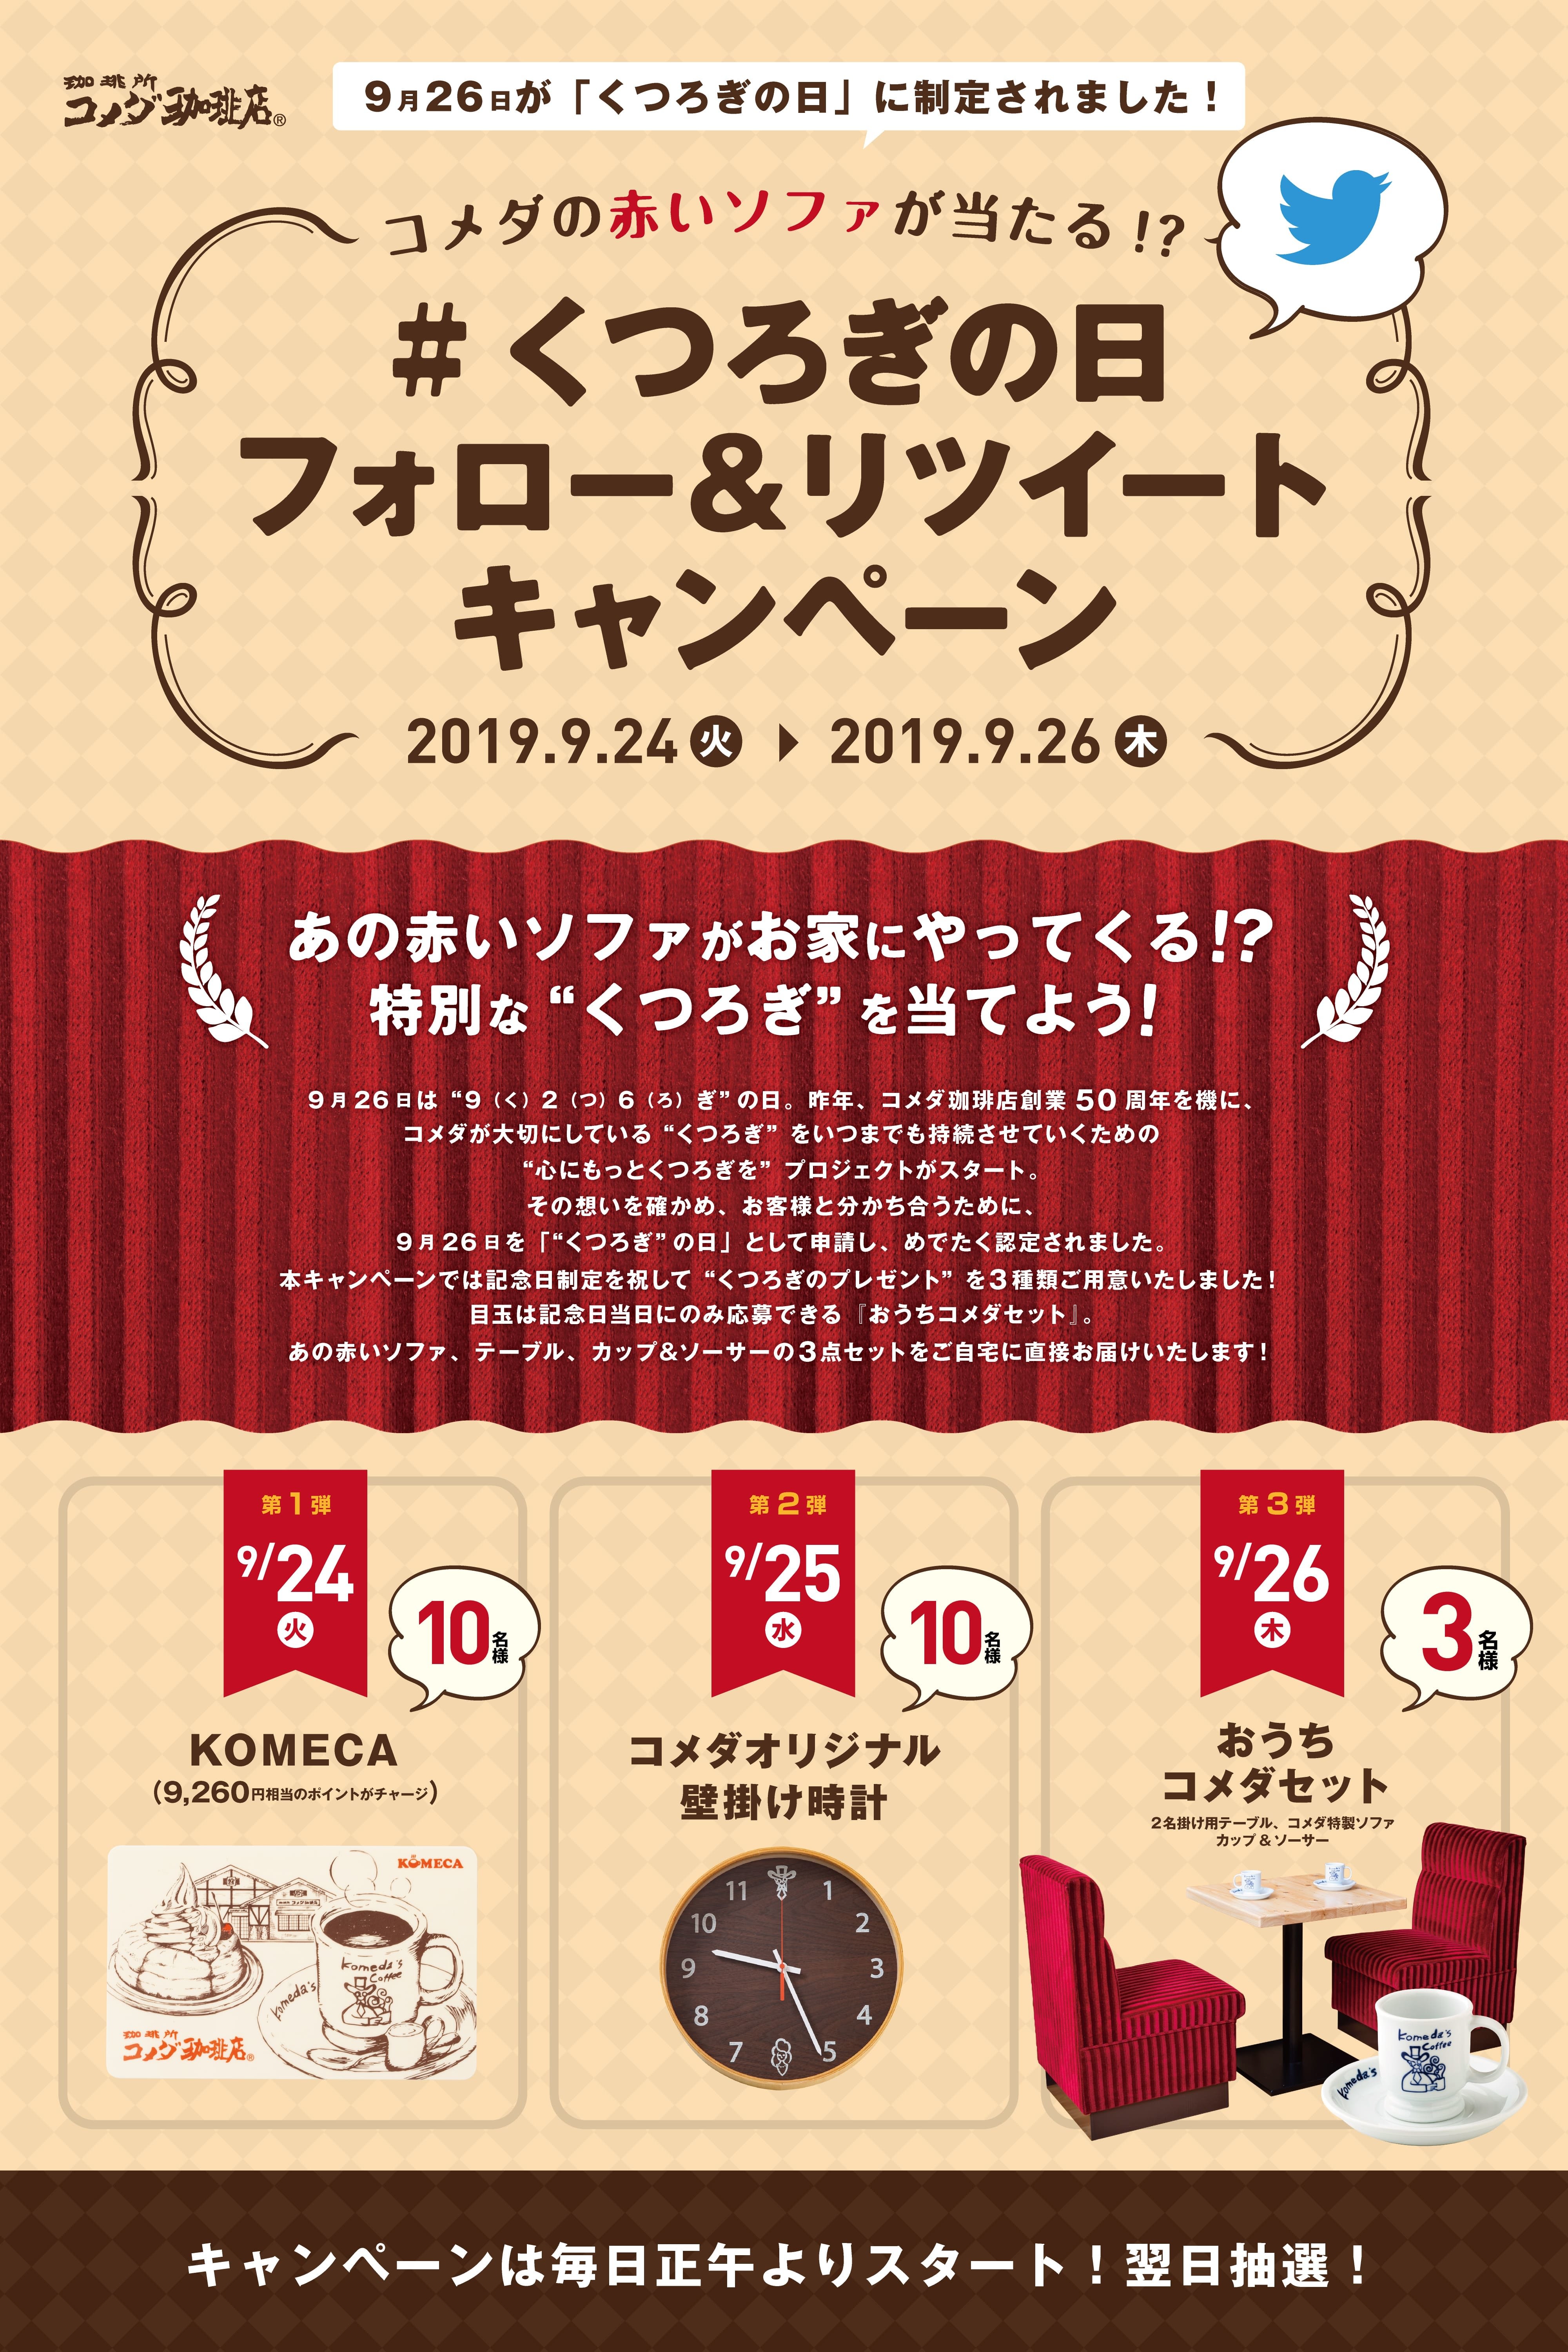 令和元年5月1日しぼりの日本酒を貯蔵熟成した
「令和元年秋上がり」を9月24日に数量限定発売